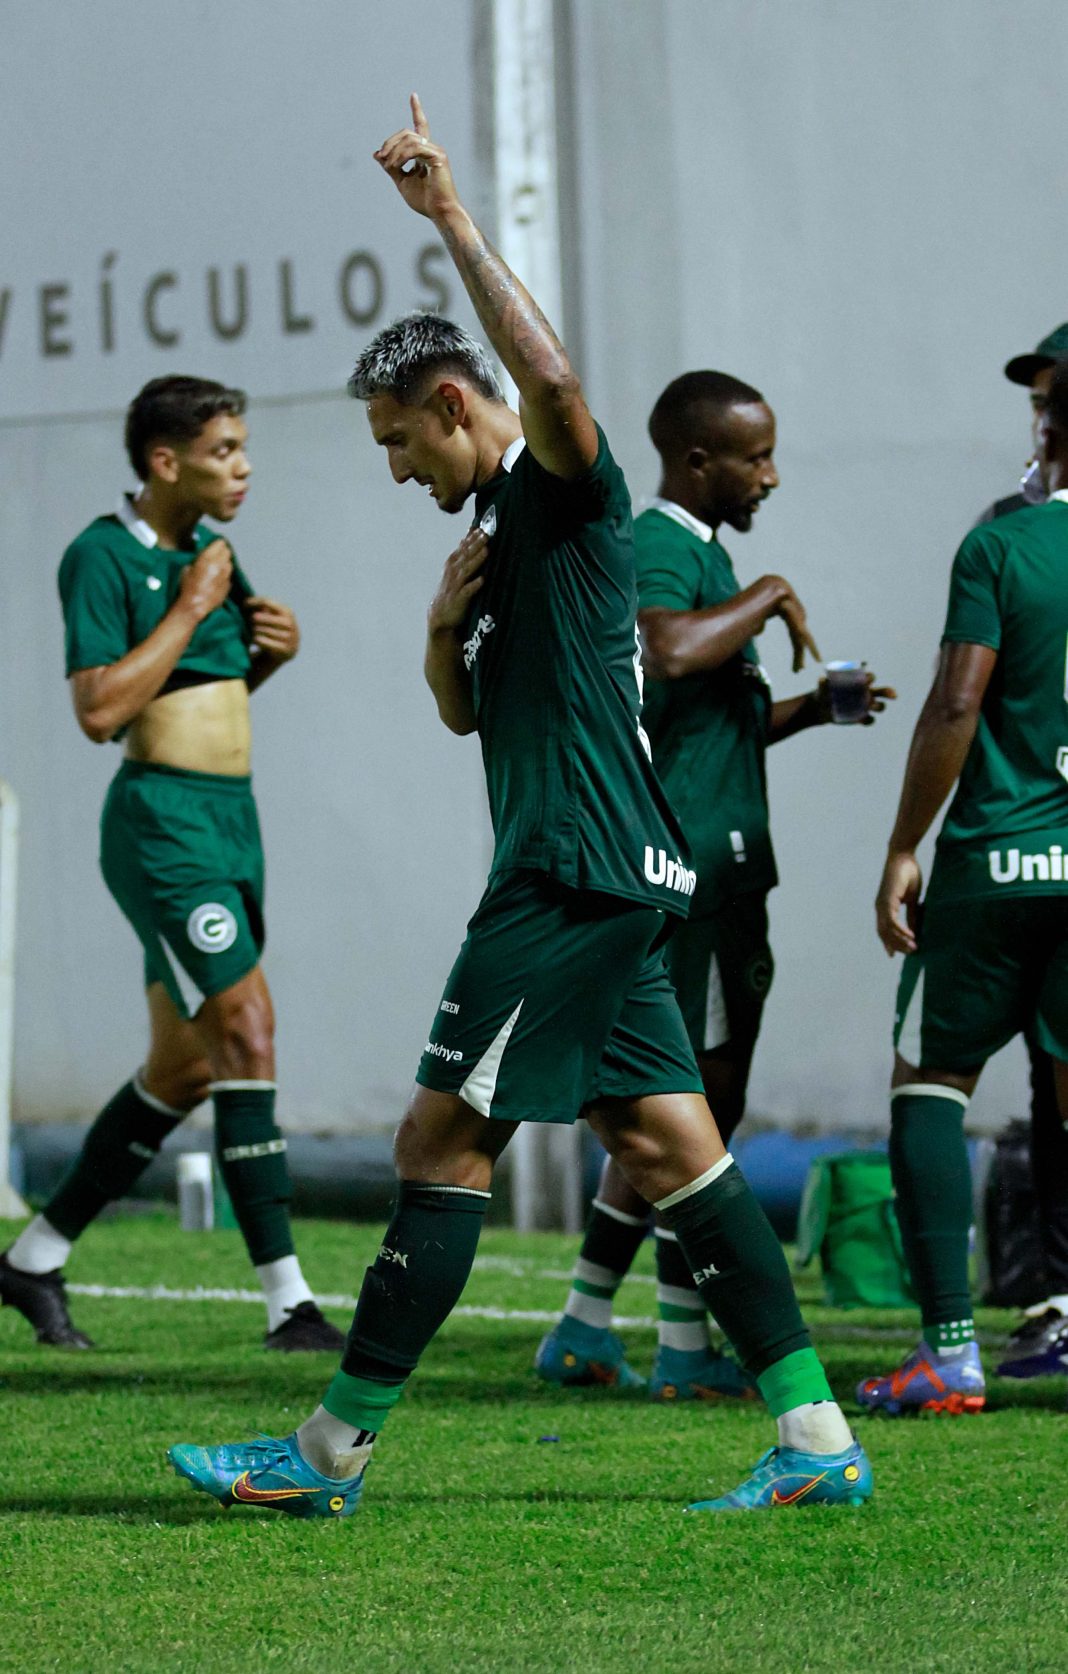 O atacante Breno Herculano que já marcou dois gols no campeonato, comemora o ultimo marcado com a camisa do Goiás, na partida contra o CRAC em Catalão-GO